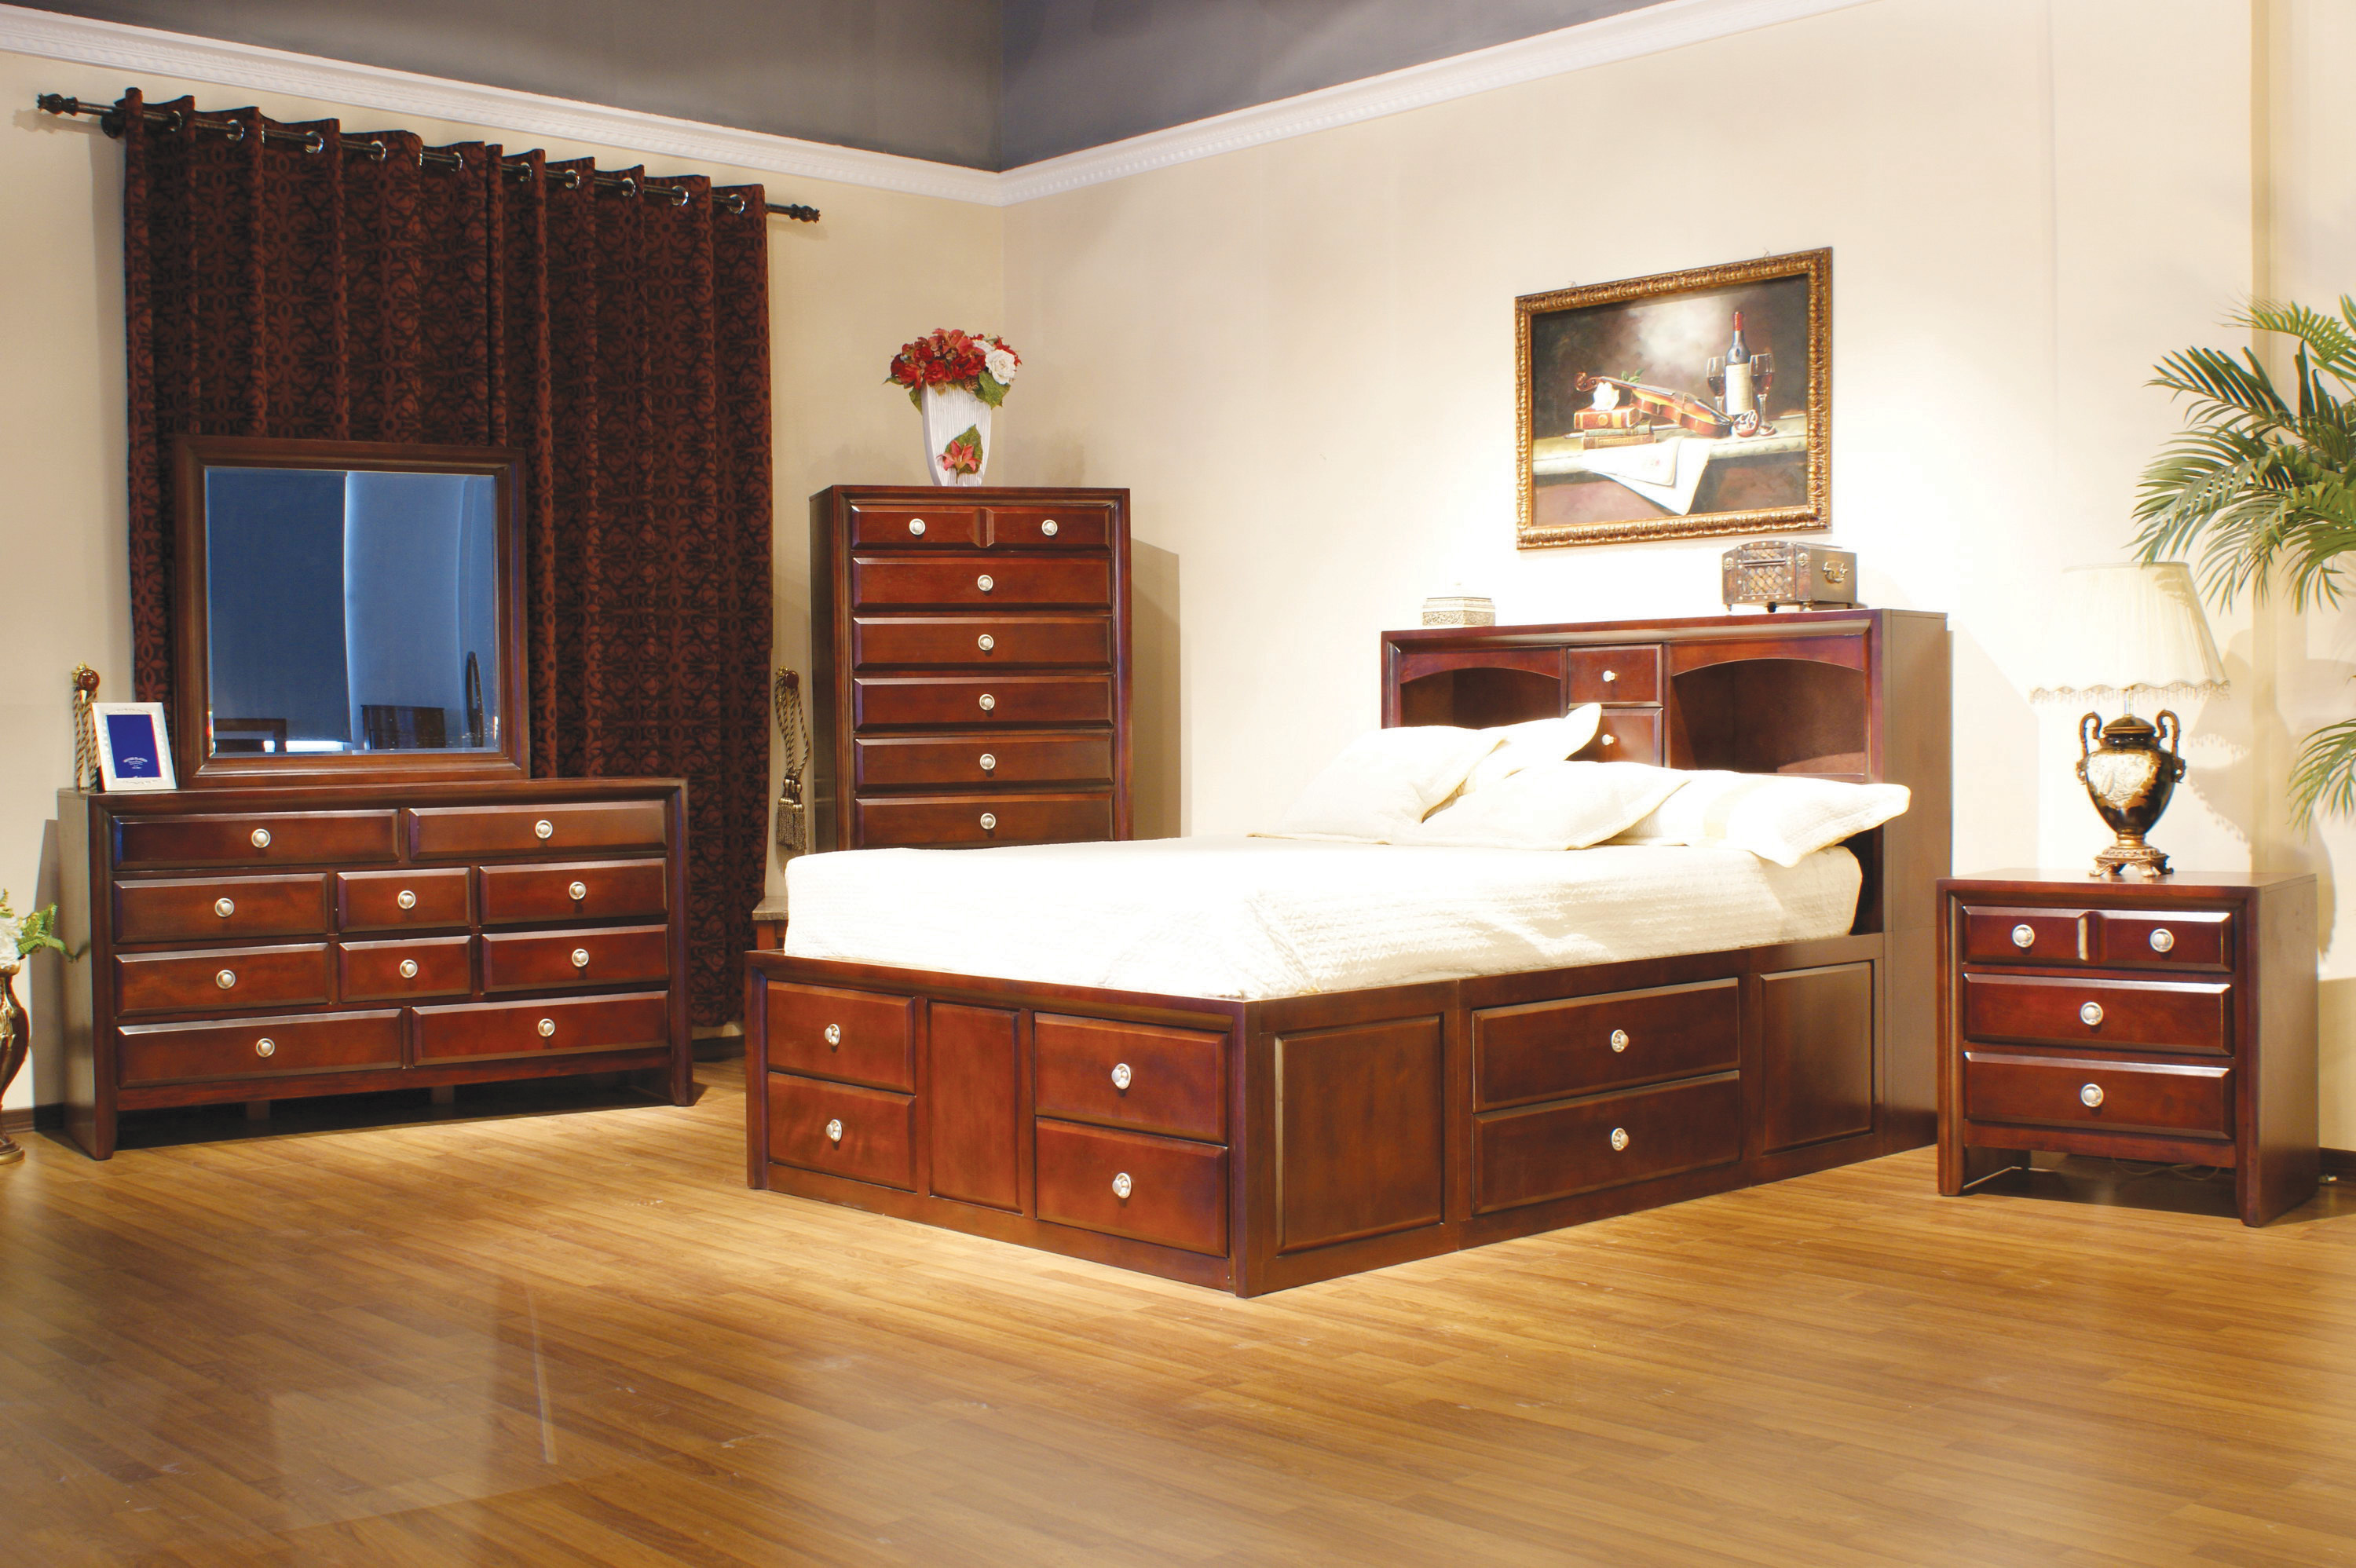 Какая есть мебель. Комната с деревянной мебелью. Спальня с коричневой деревянной мебелью. Комната с мебелью под красное дерево. Интерьер спальни с коричневой деревянной мебелью.